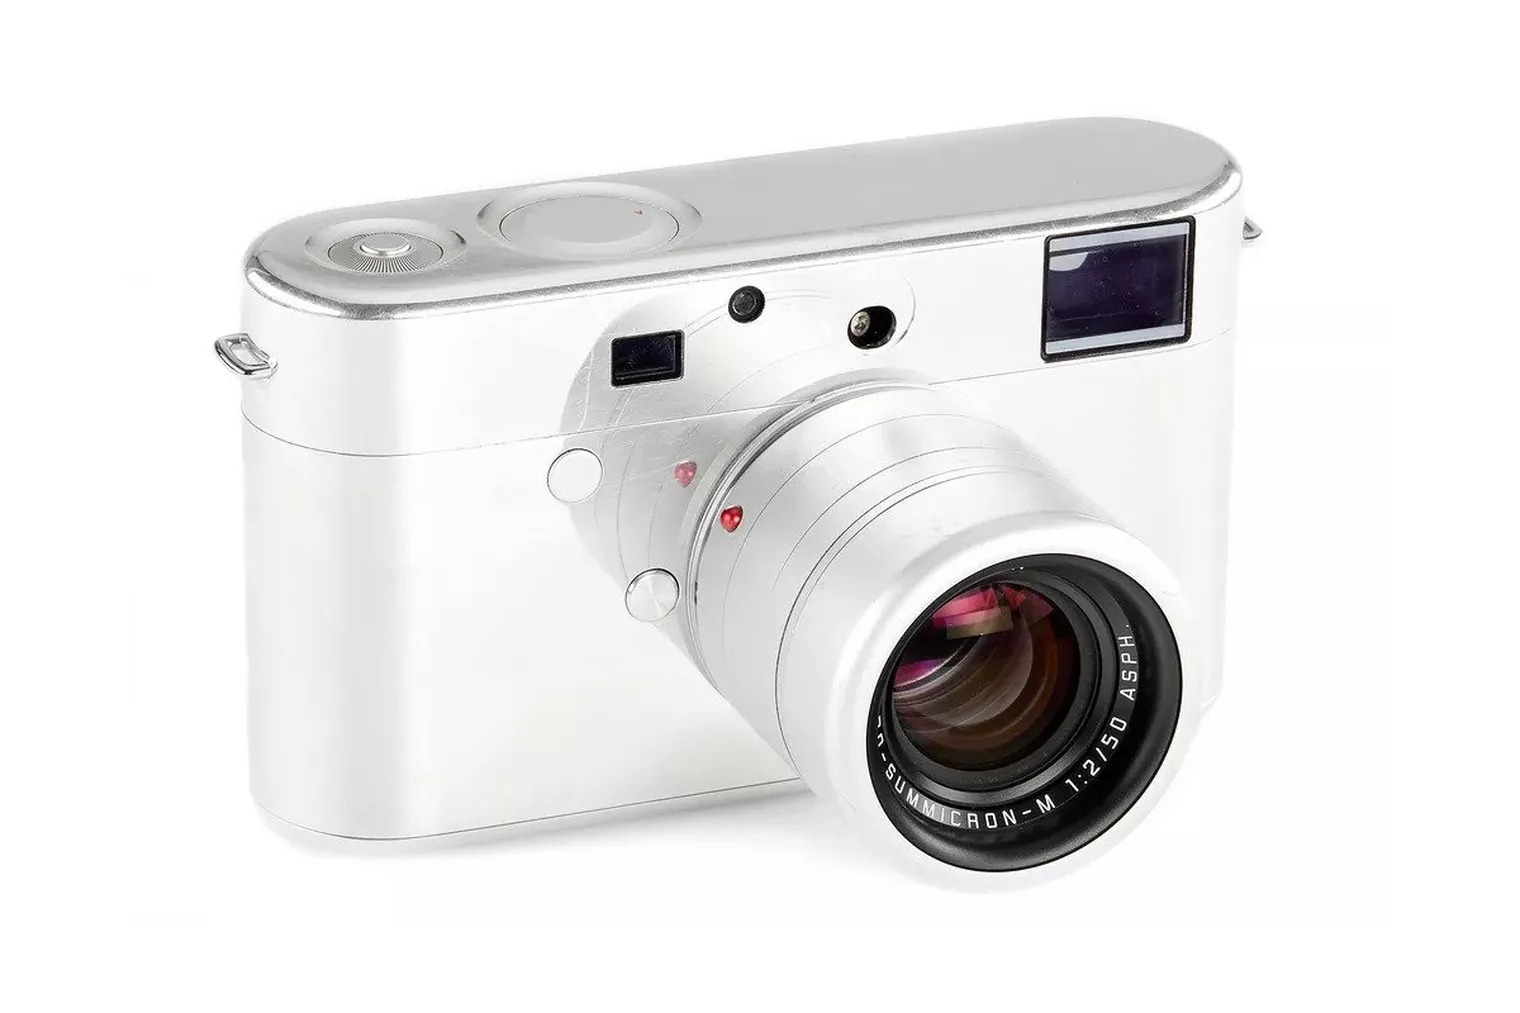 Nguyên mẫu máy ảnh Leica do Jony Ive thiết kế đang được bán đấu giá 200.000 USD